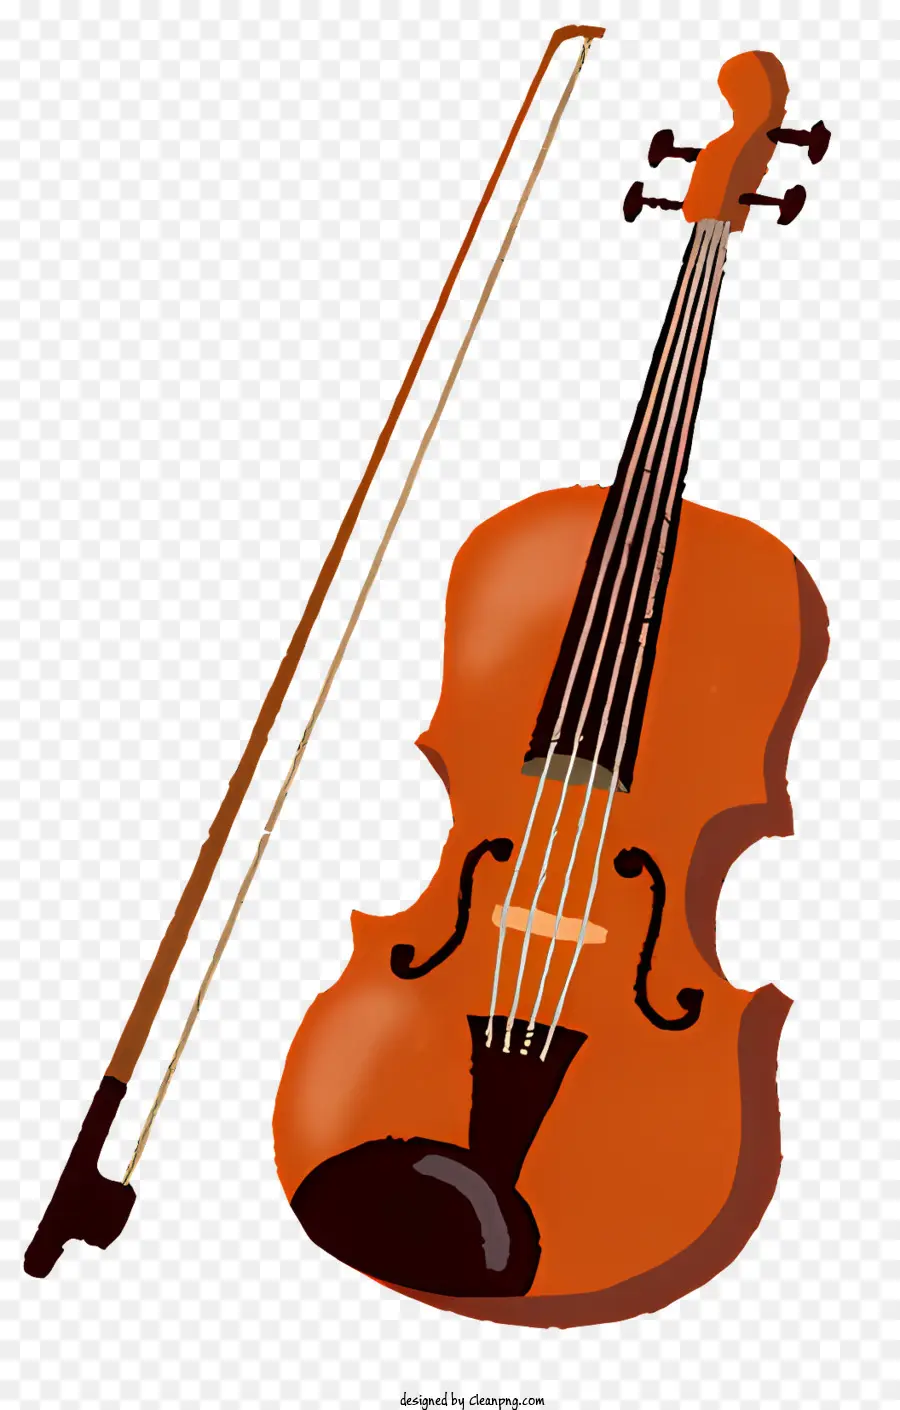 violino in legno di violino arancione musicale violino con violino curvo a prua - Violino arancione con intricate incisioni e fiocco